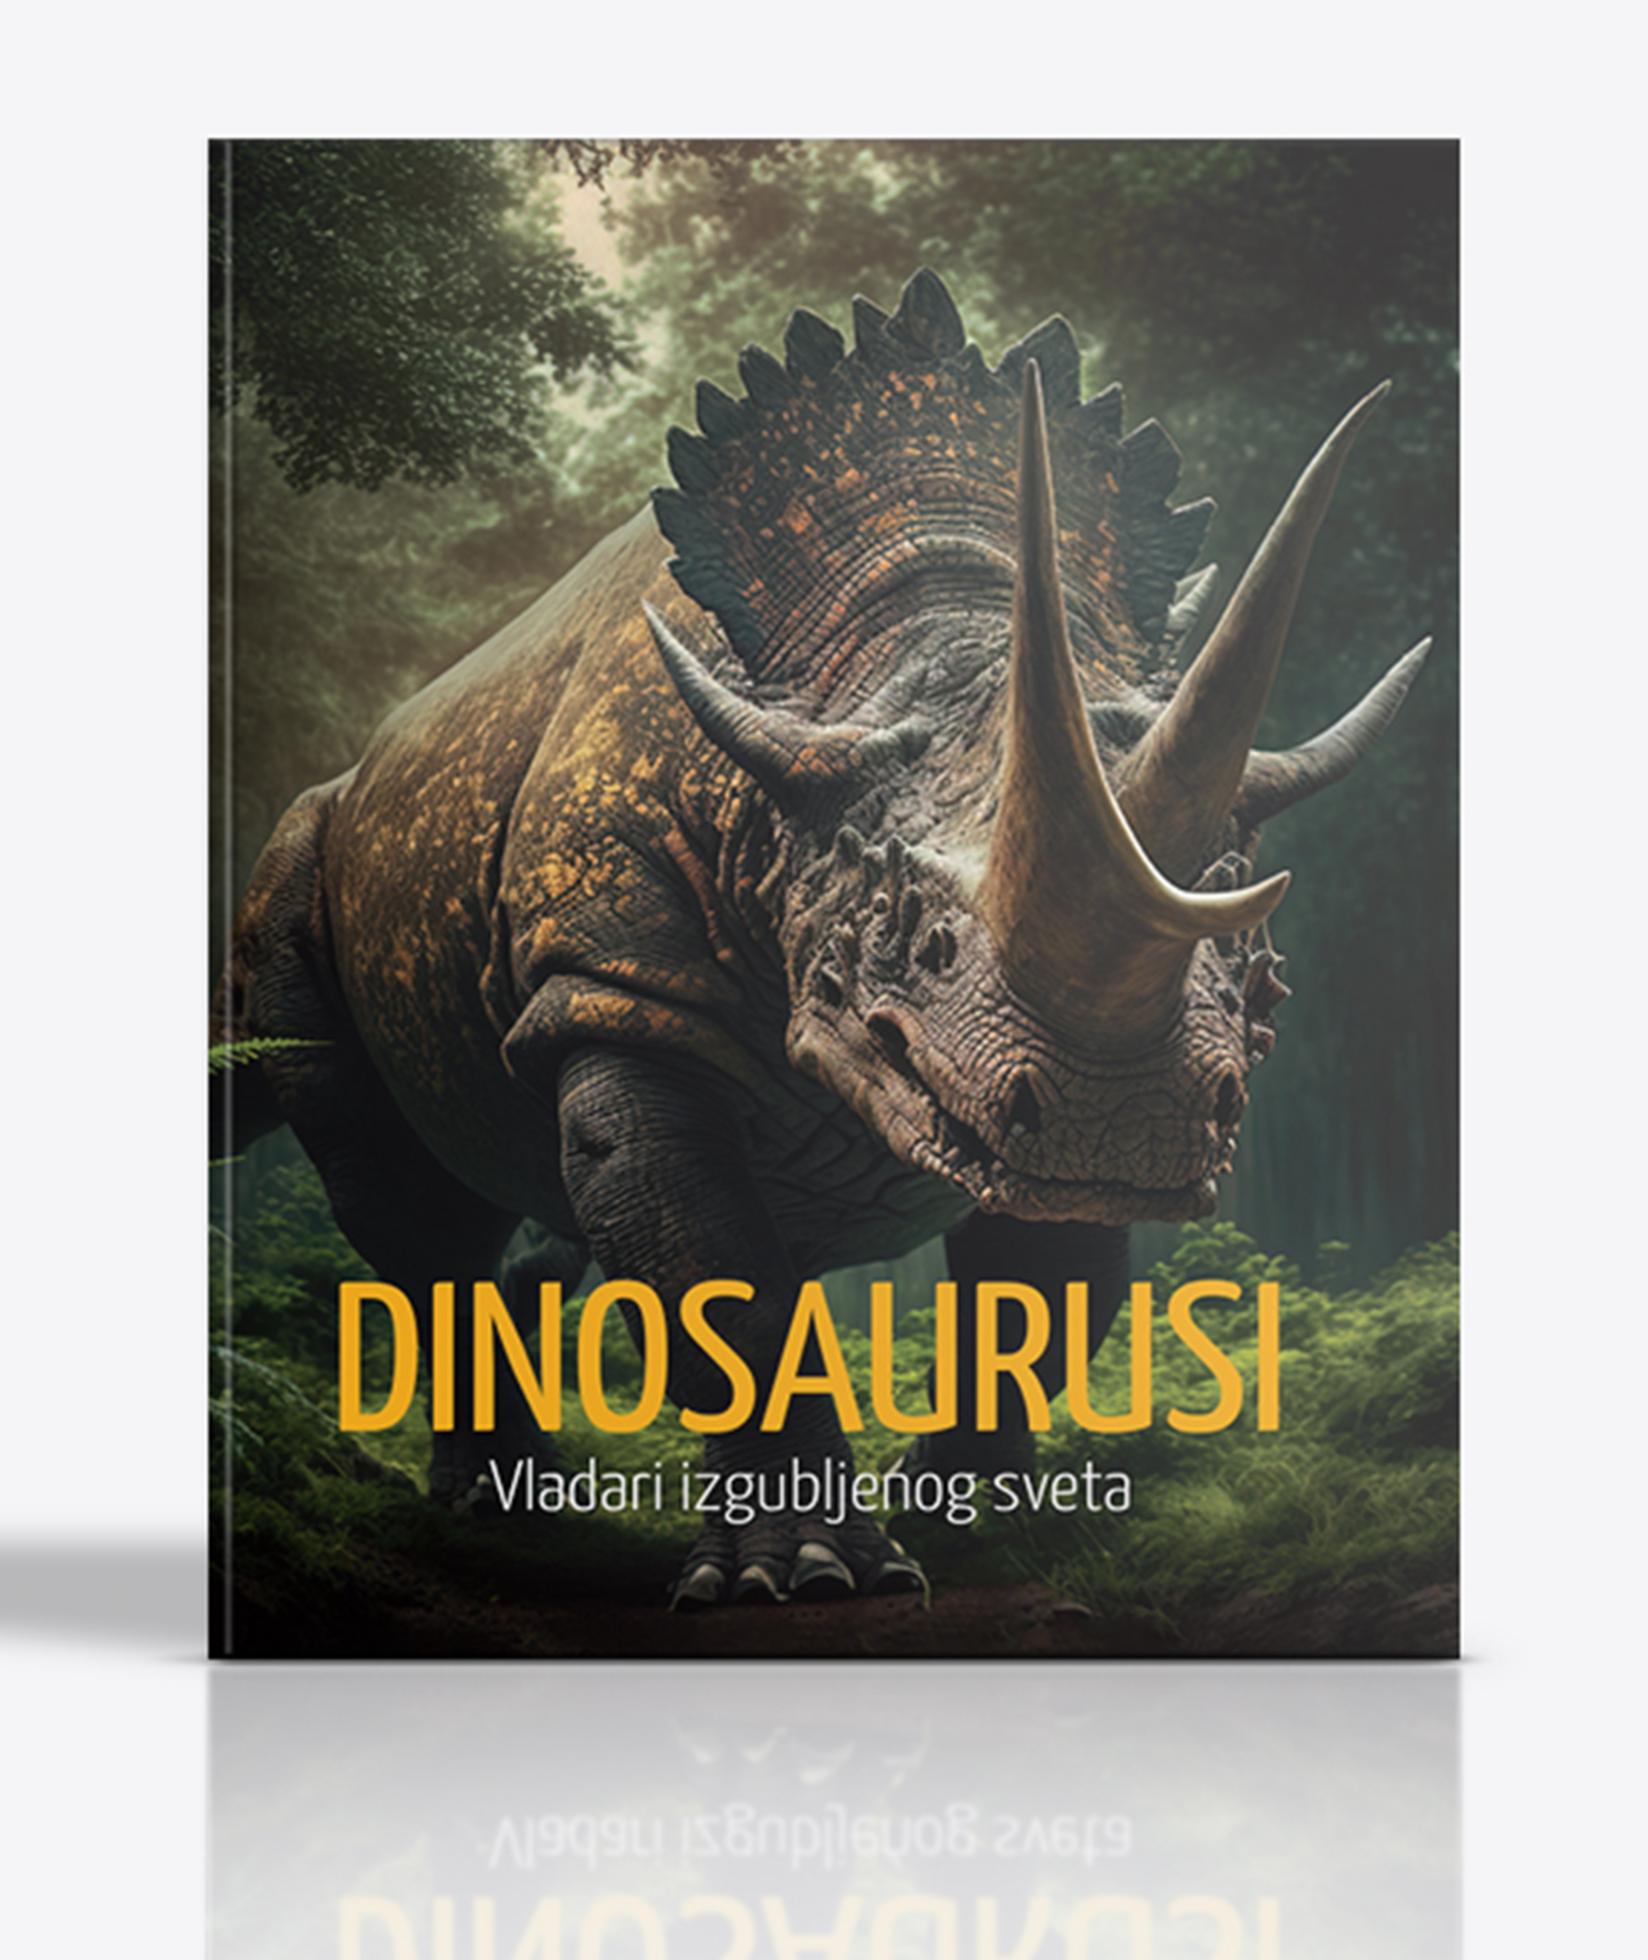 Dinosaurusi - Vladari izgubljenog sveta